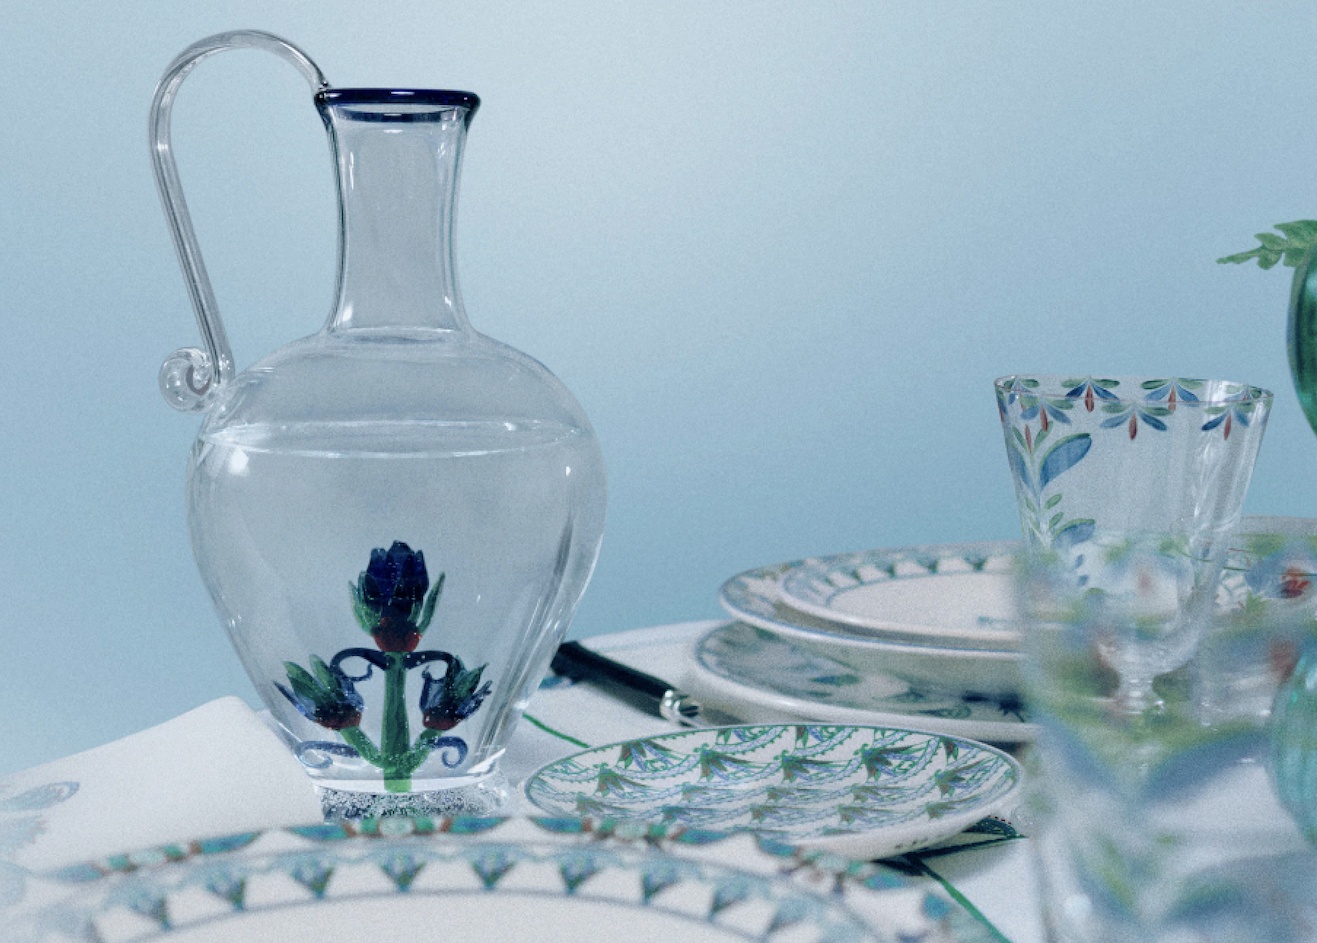 Новая коллекция посуды Dior Maison, вдохновленная голубым лотосом